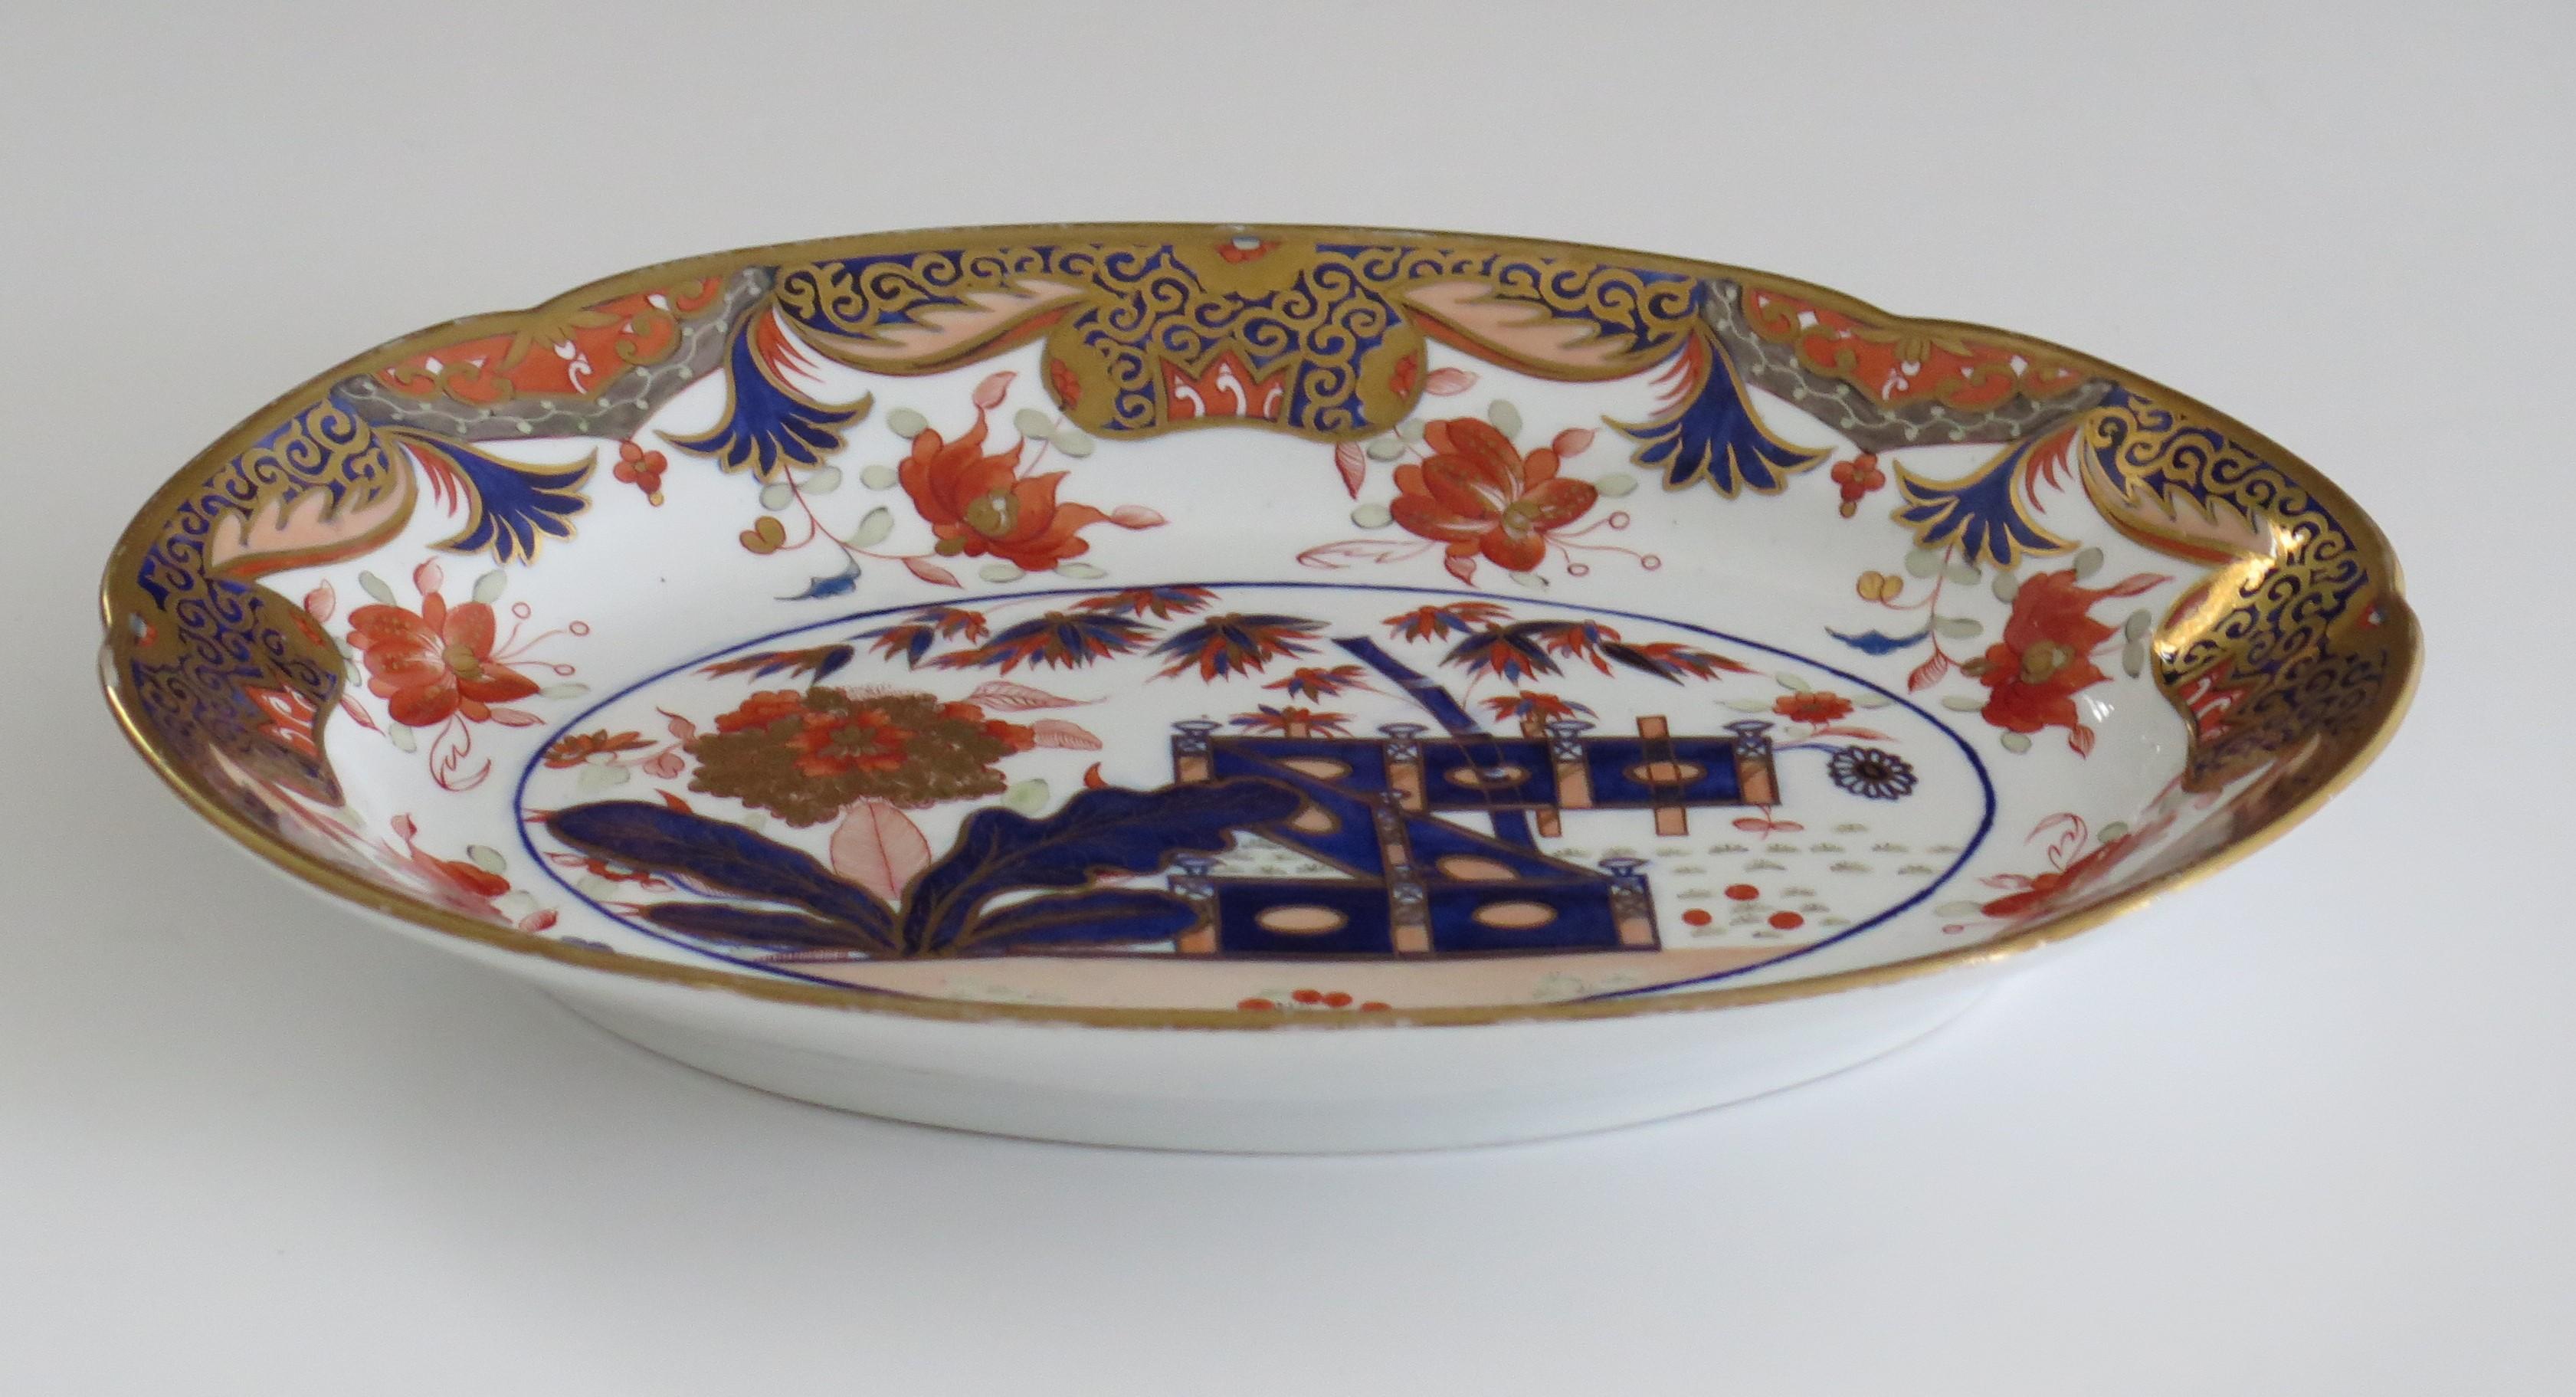 Dies ist ein schönes Beispiel für eine englische Porzellanplatte aus der Zeit Georgs III., hergestellt von Spode und handbemalt im Muster 967, aus dem frühen 19. Jahrhundert, um 1815.

Die Platte oder Schale hat eine ovale Form mit einem gekerbten